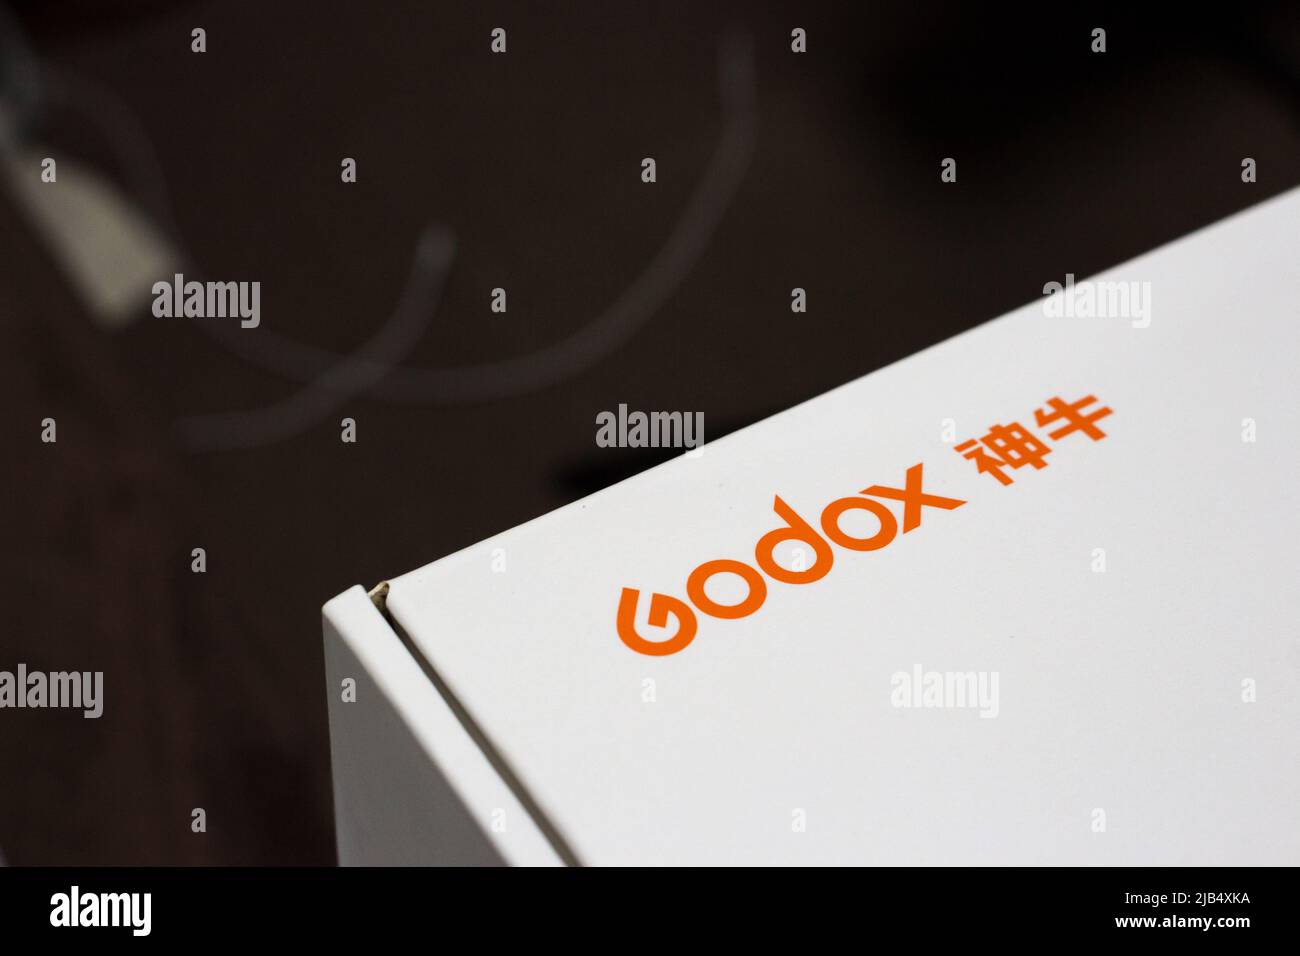 Kumamoto, Japan - Mai 29 2020 : das Logo von GODOX, einem chinesischen Hersteller von professionellen Fotogeräten, wird auf der Produktverpackung gedruckt. Stockfoto